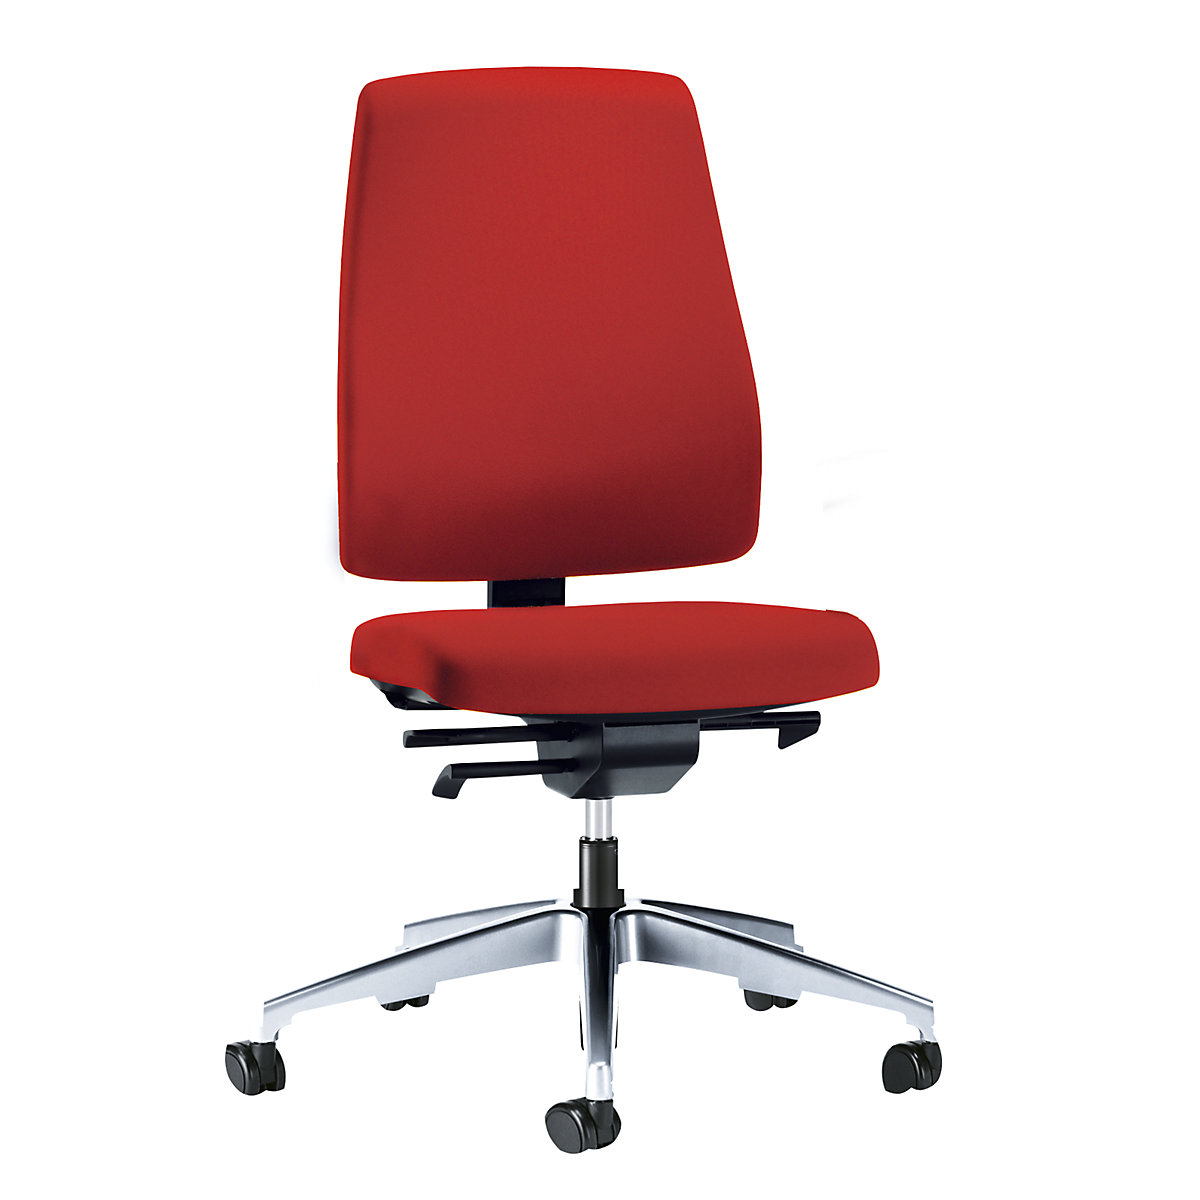 Sedia girevole per ufficio GOAL, altezza schienale 530 mm – interstuhl, telaio lucido, con rotelle dure, rosso fuoco, profondità sedile 410 mm-1